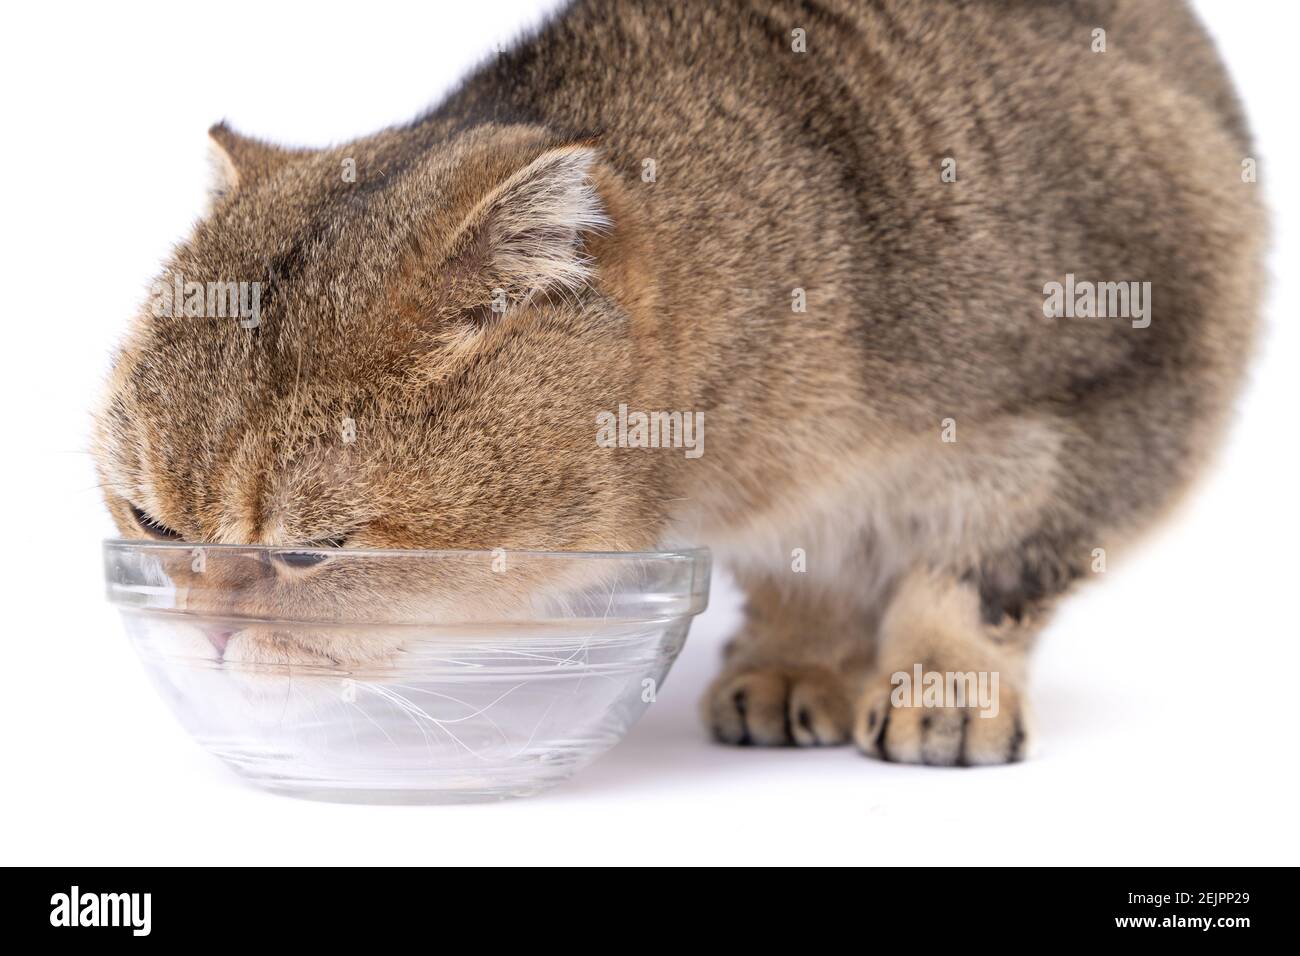 El gato de la plegada escocesa dorada comiendo al lado de un tazón de vidrio sobre un fondo blanco Foto de stock